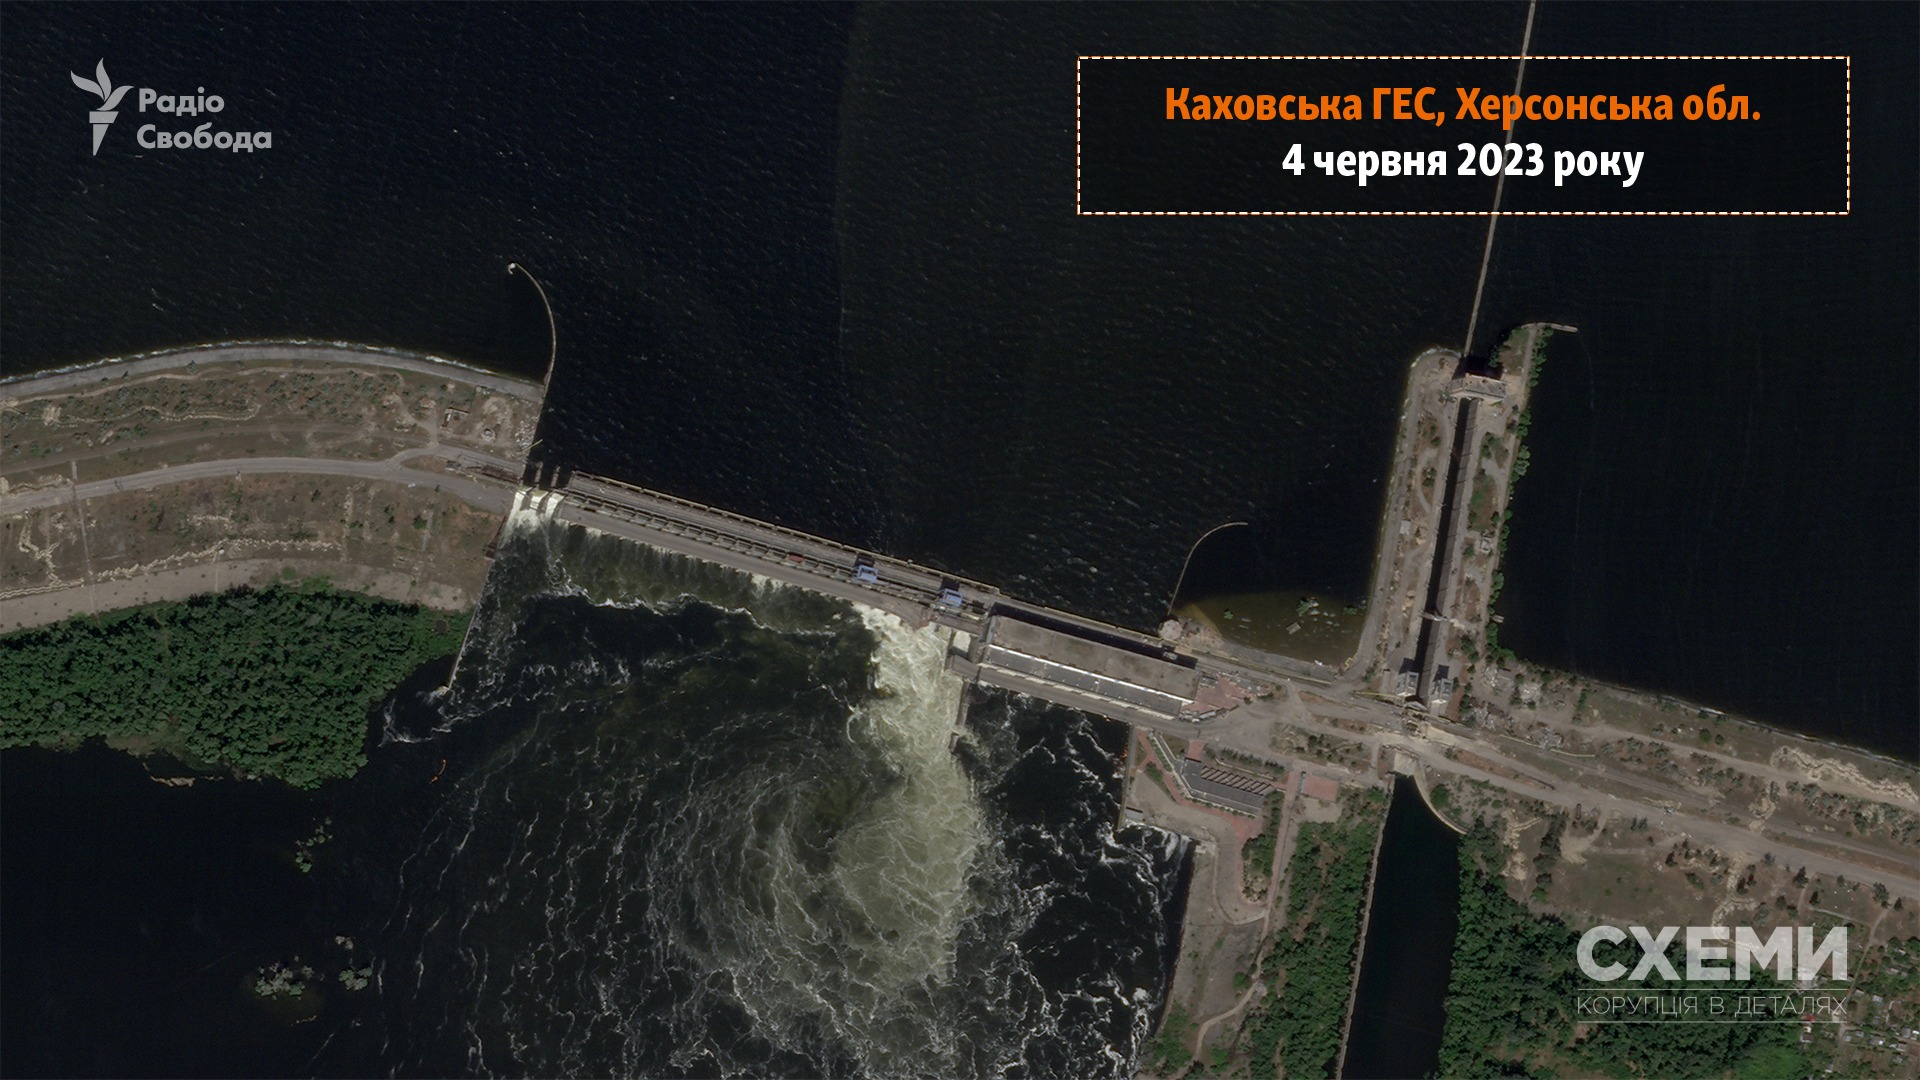 Опубликован первый спутниковый снимок разрушенной Каховской ГЭС — фото